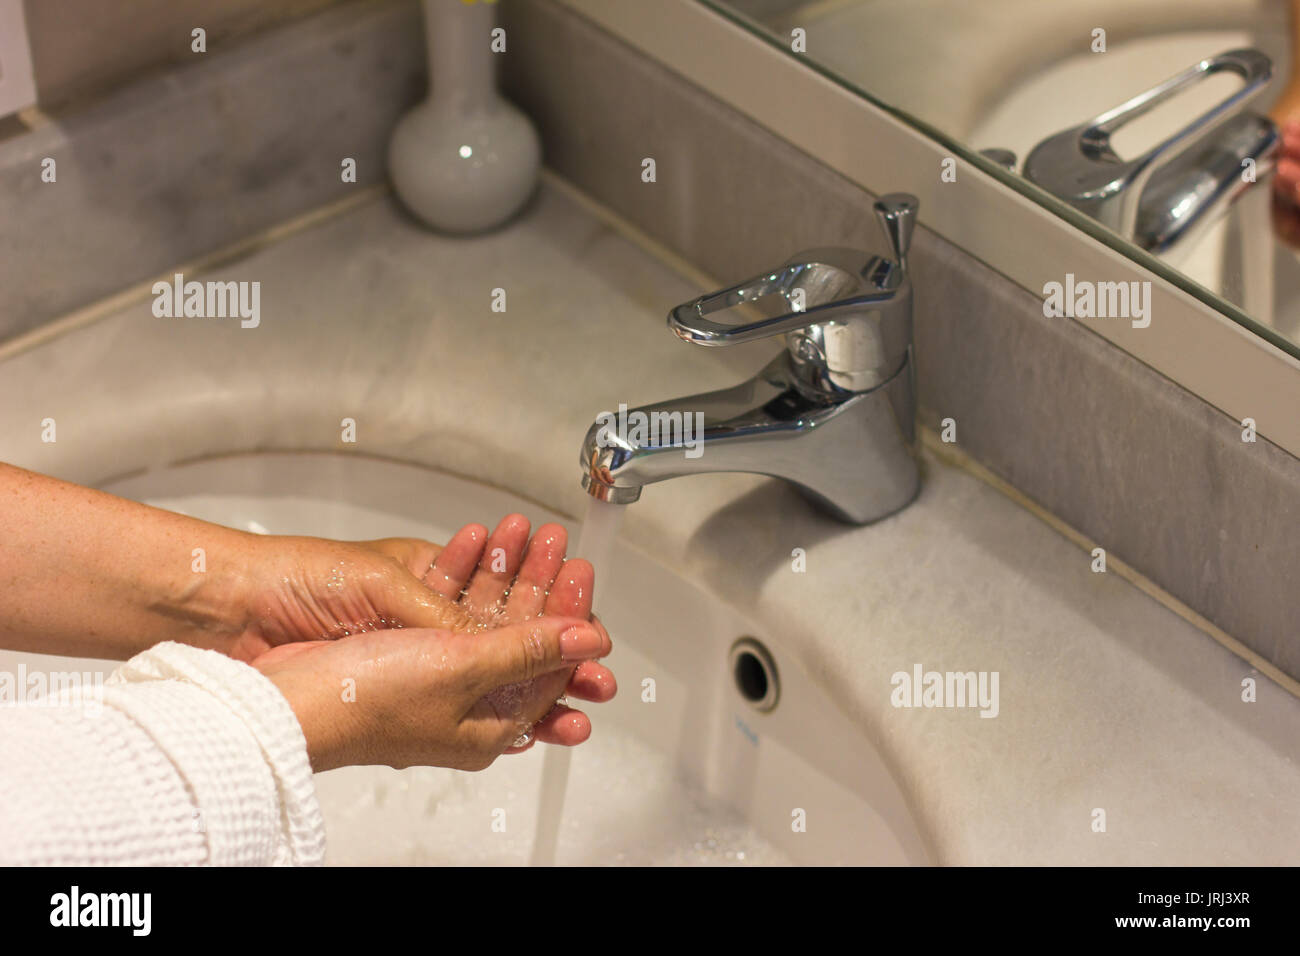 Frauen ihre Hände waschen im Waschbecken im Bad Stockfotografie - Alamy